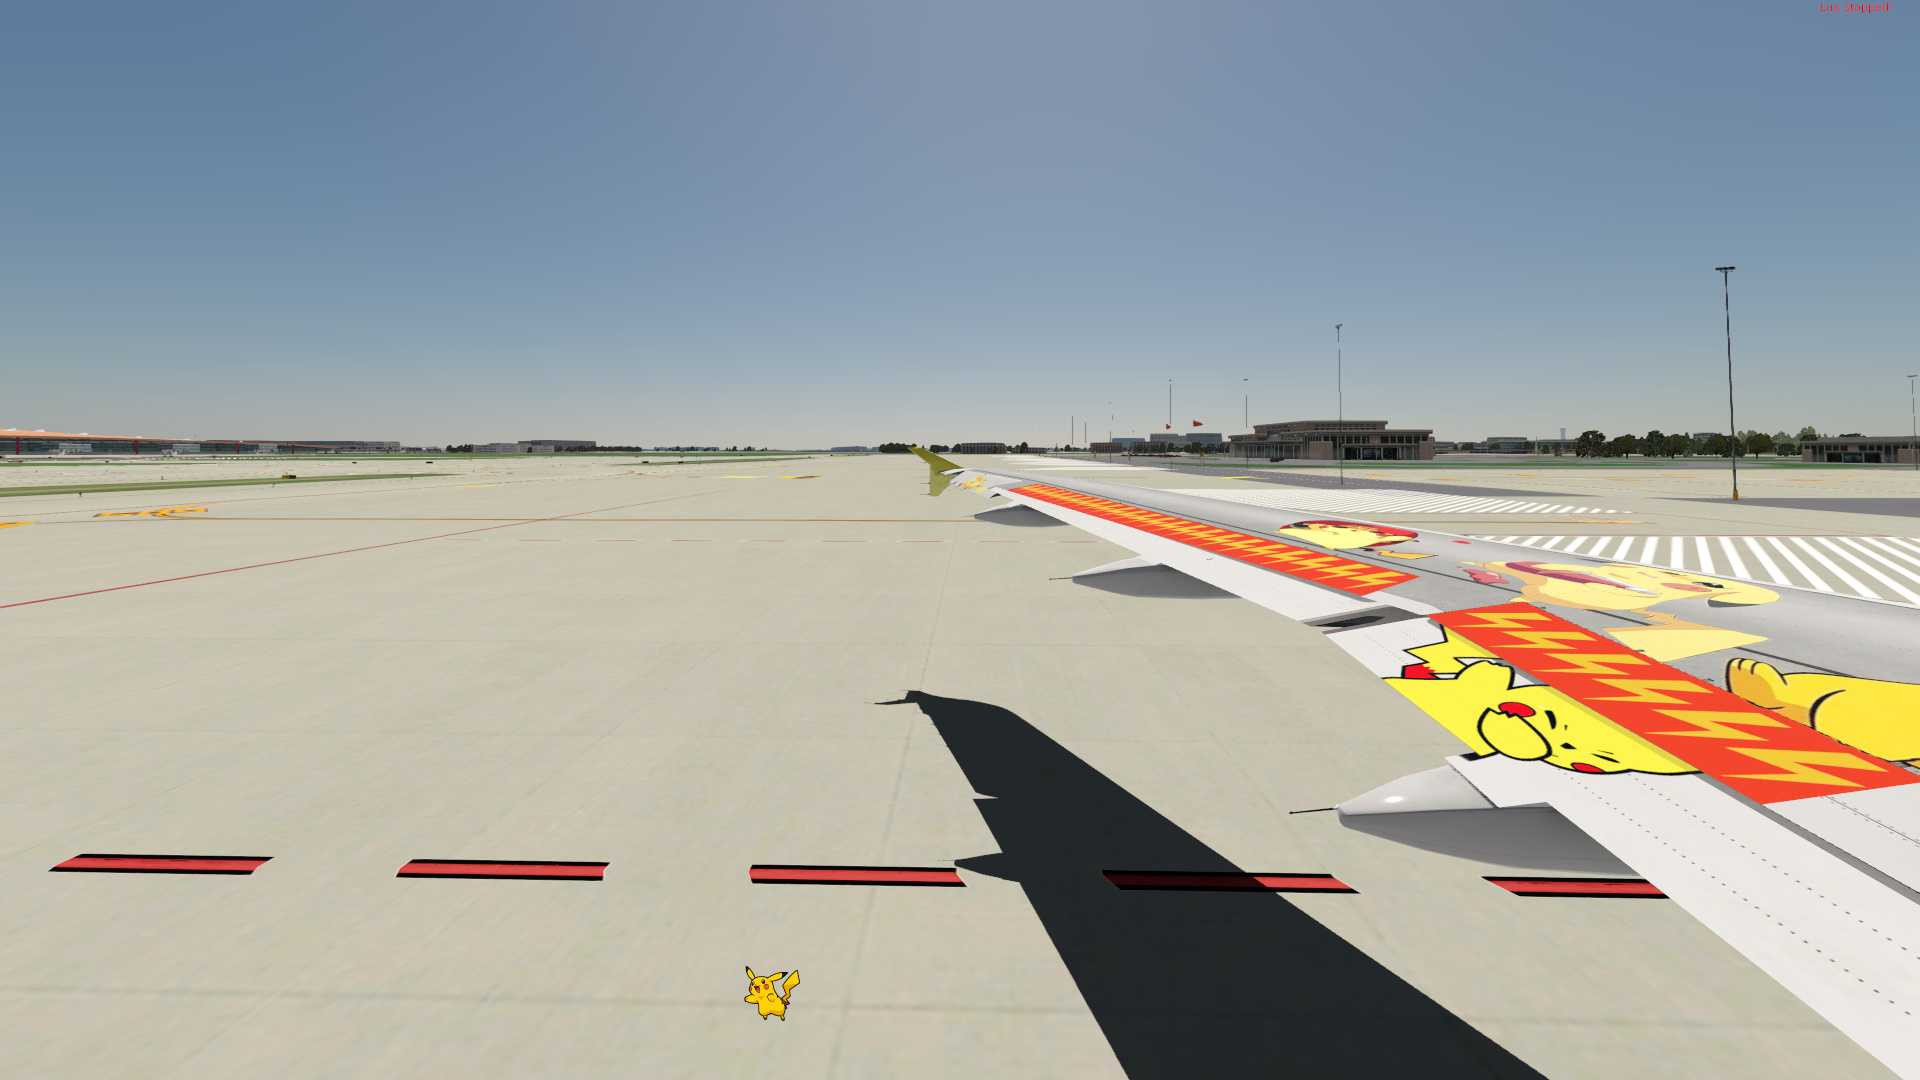 【X-Plane11】空客A319皮卡丘涂装 1.0-5979 